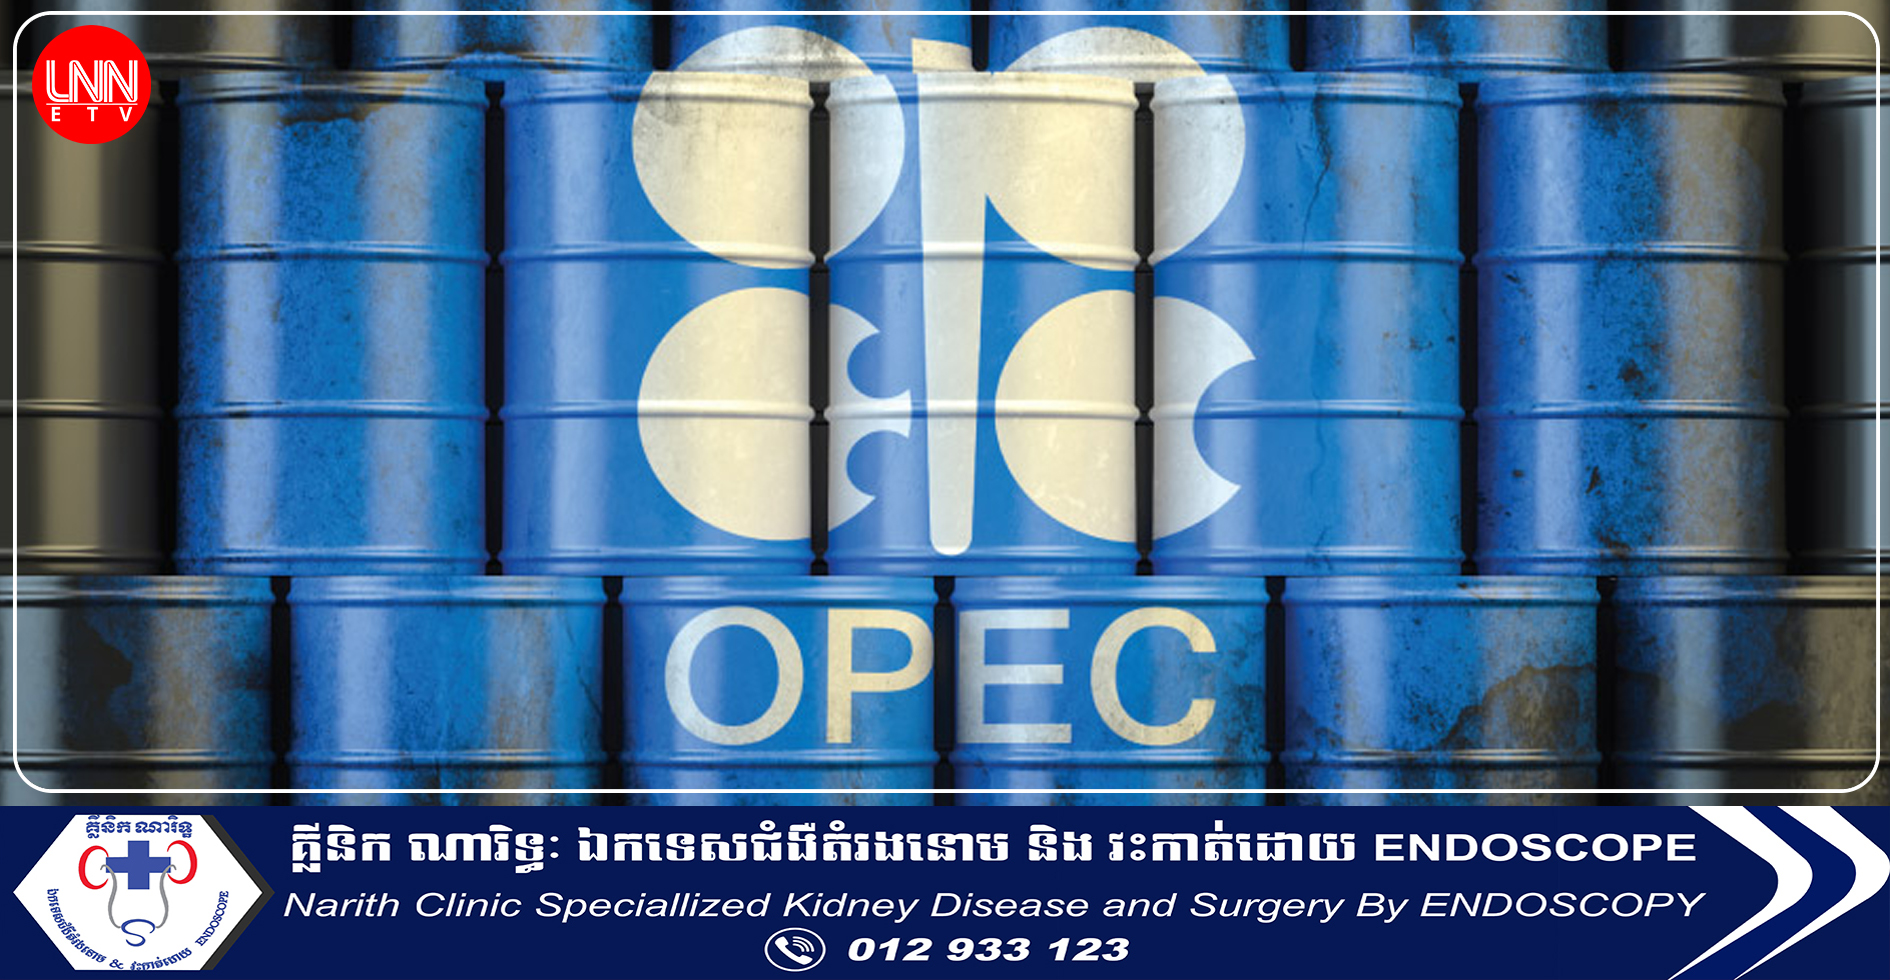 អង្គការ OPEC+ នឹងកាត់បន្ថយការផលិតប្រេង ២,២លានប៉ារ៉ែលក្នុងមួយថ្ងៃនៅឆ្នាំក្រោយ